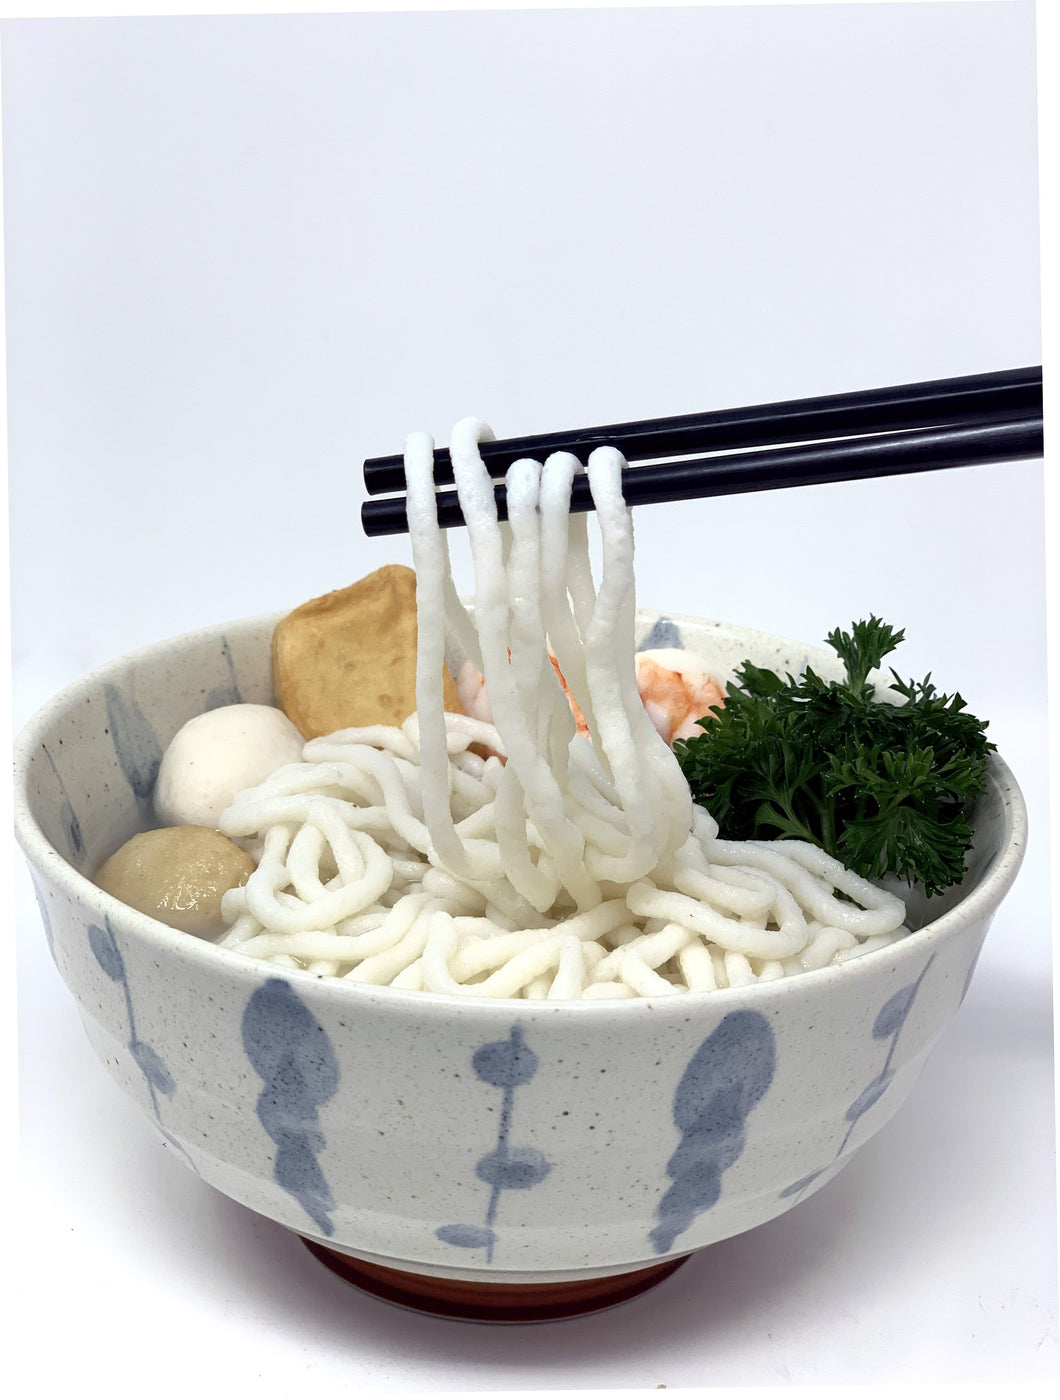 火鍋魚麵 (紅衫及狹鱈魚肉製成) Fish Noodle for Hot Pot (2pc) 7 oz #1603a